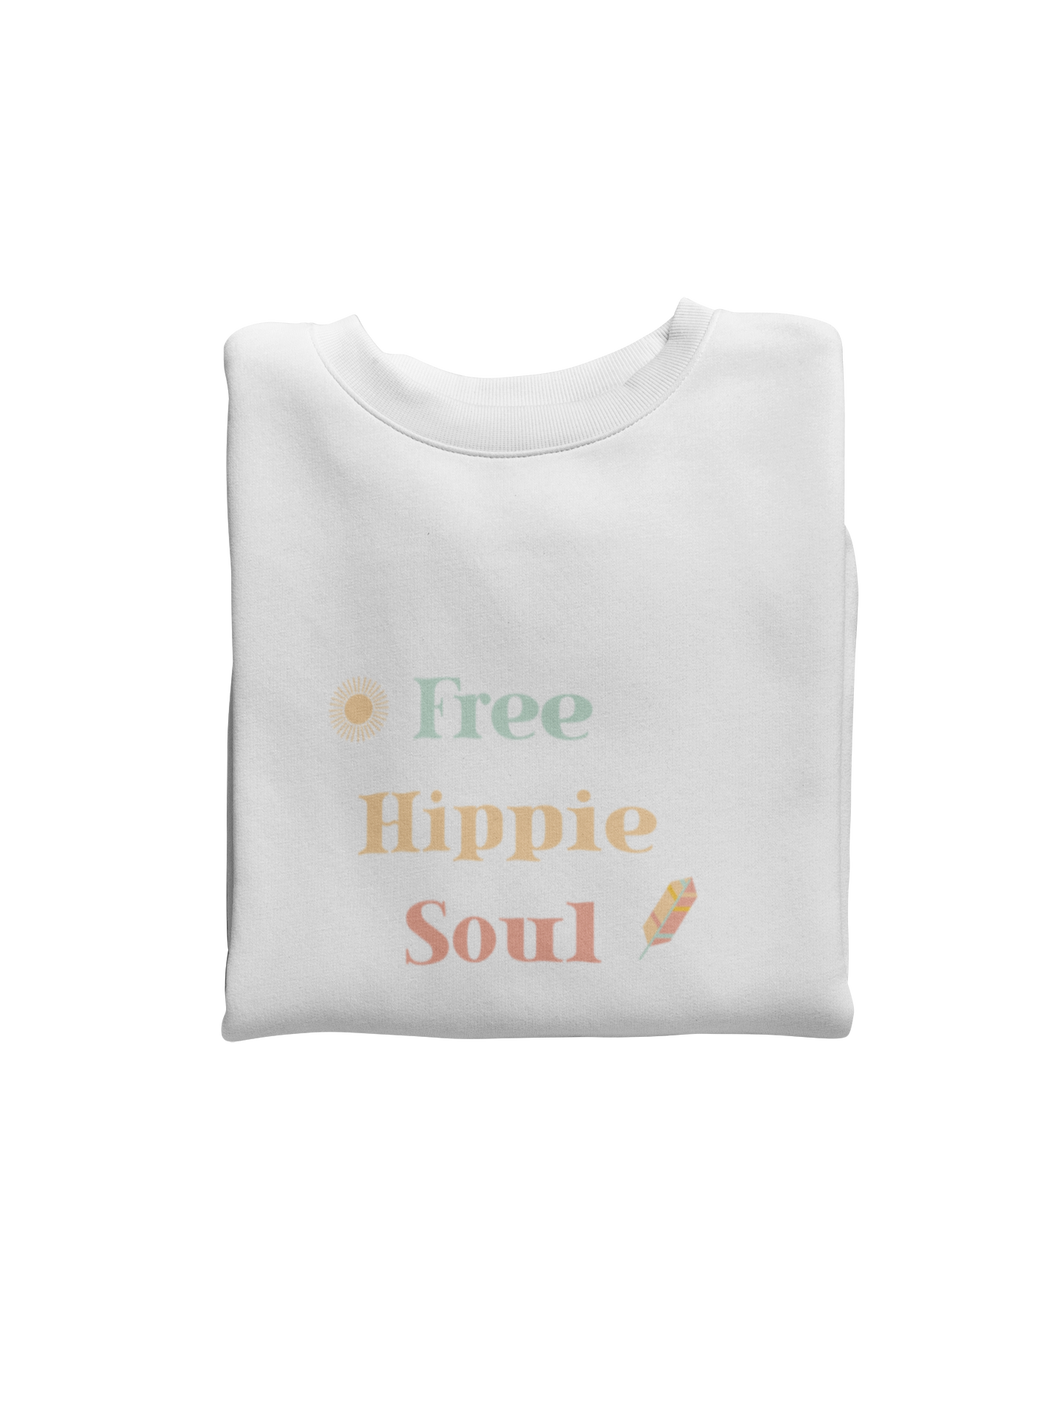 Free Hippie Soul Sweatshirt